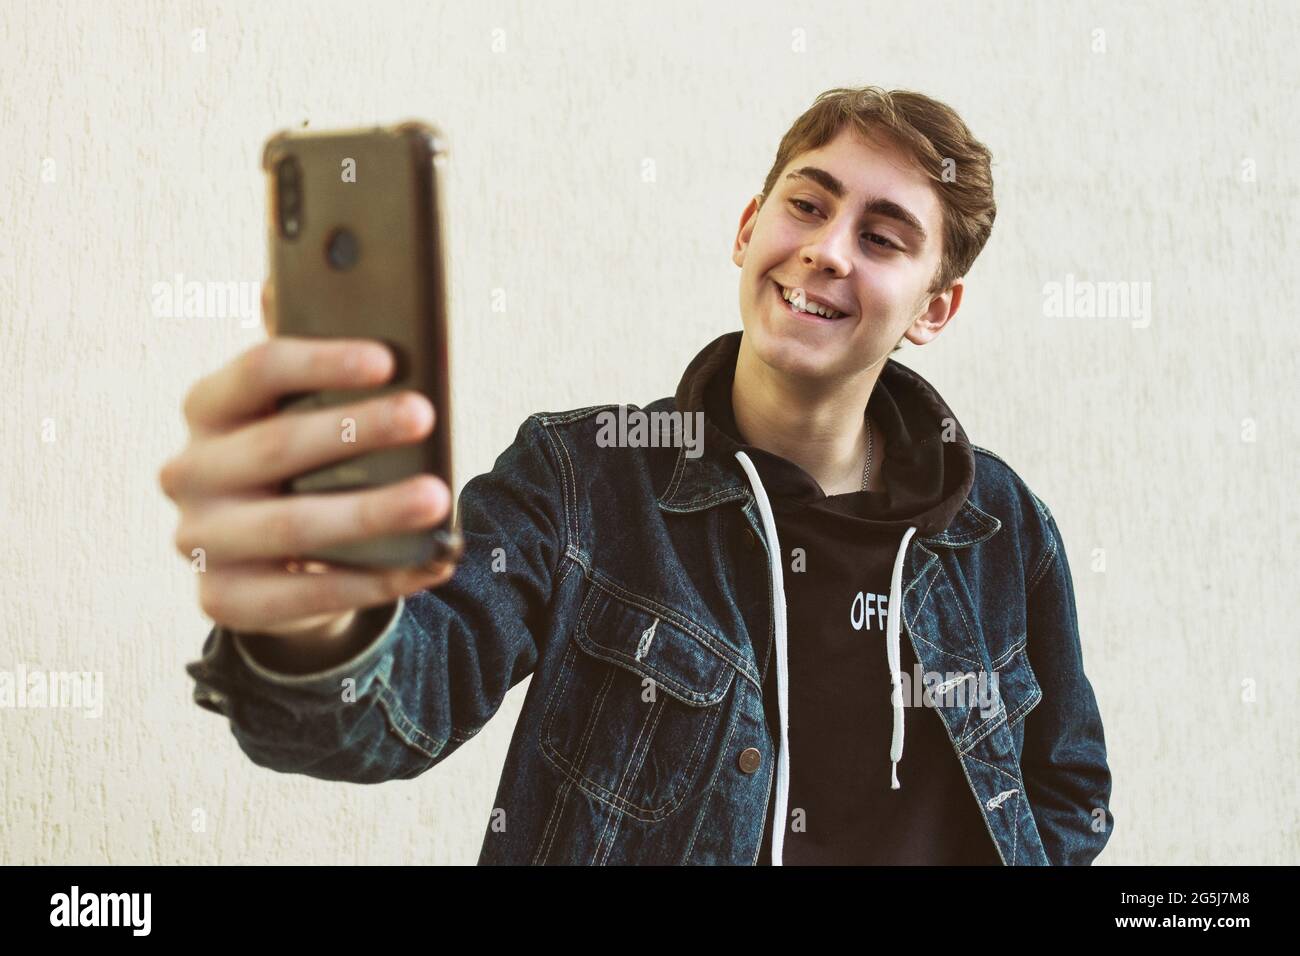 Ein Teenager macht ein Selfie mit seinem Handy auf einem hellen Hintergrund - ein glücklicher junger Mann macht ein Foto von sich selbst mit einem Telefon - EIN Teenager in einer Denim-jacke Stockfoto